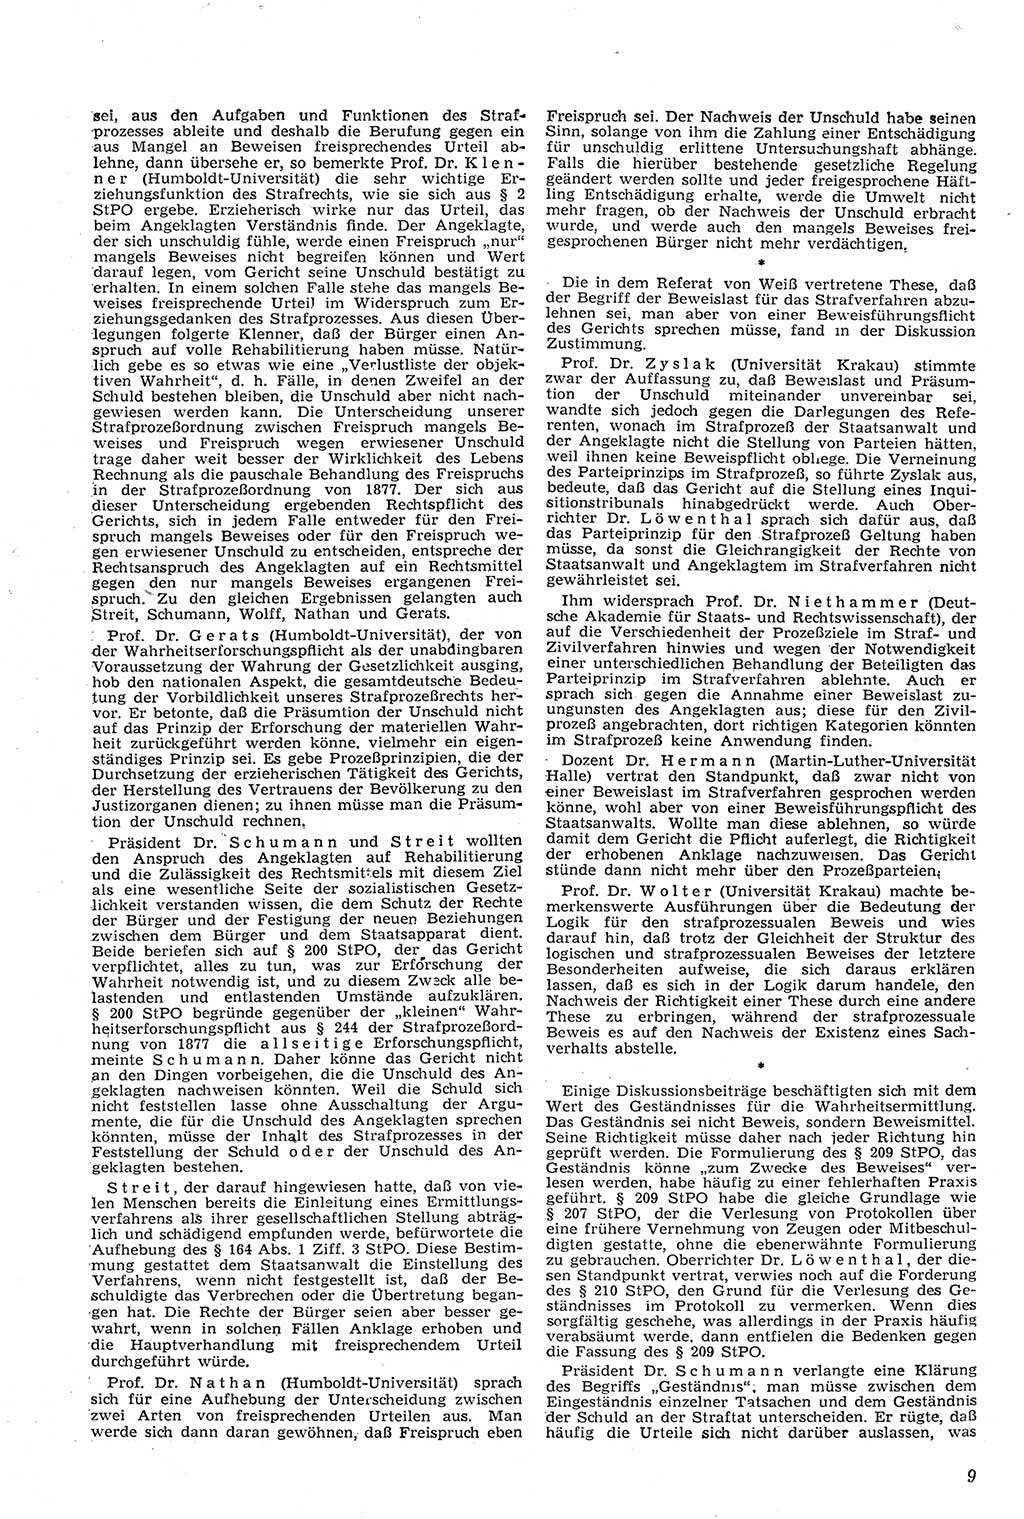 Neue Justiz (NJ), Zeitschrift für Recht und Rechtswissenschaft [Deutsche Demokratische Republik (DDR)], 11. Jahrgang 1957, Seite 9 (NJ DDR 1957, S. 9)